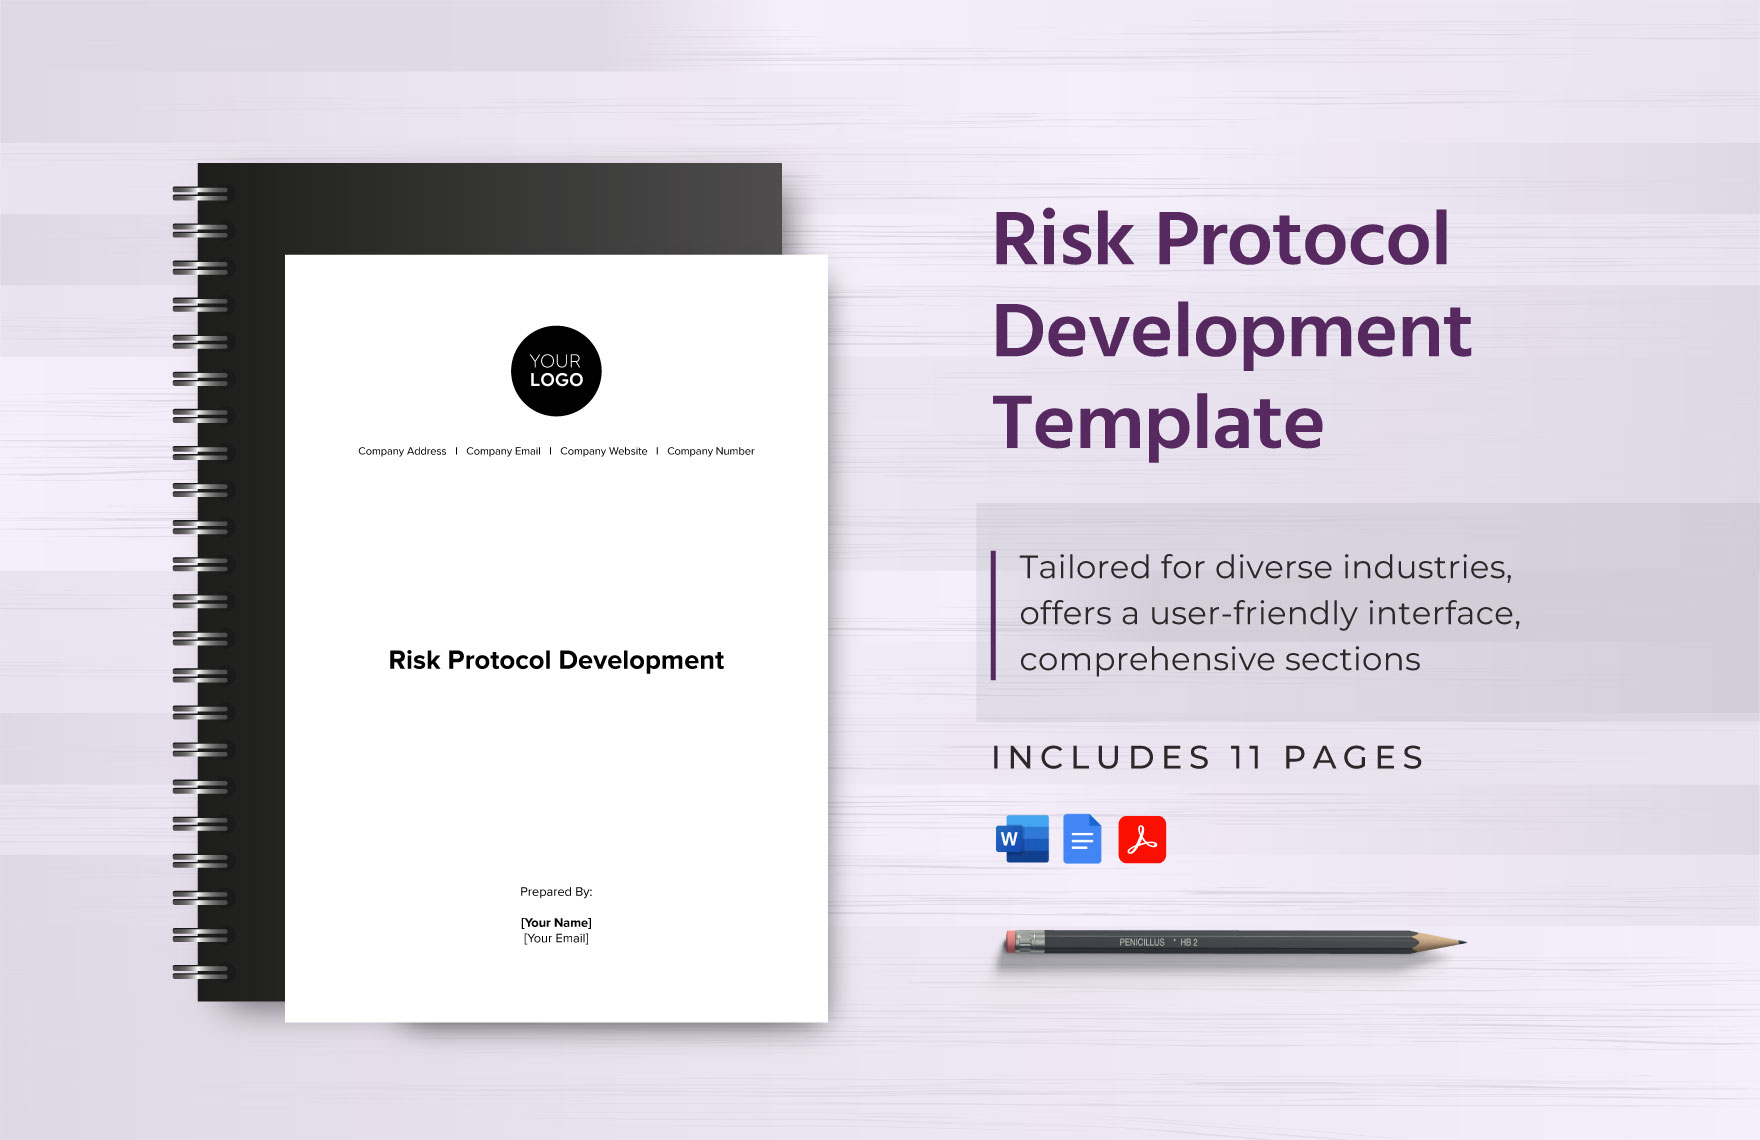 Risk Protocol Development Template